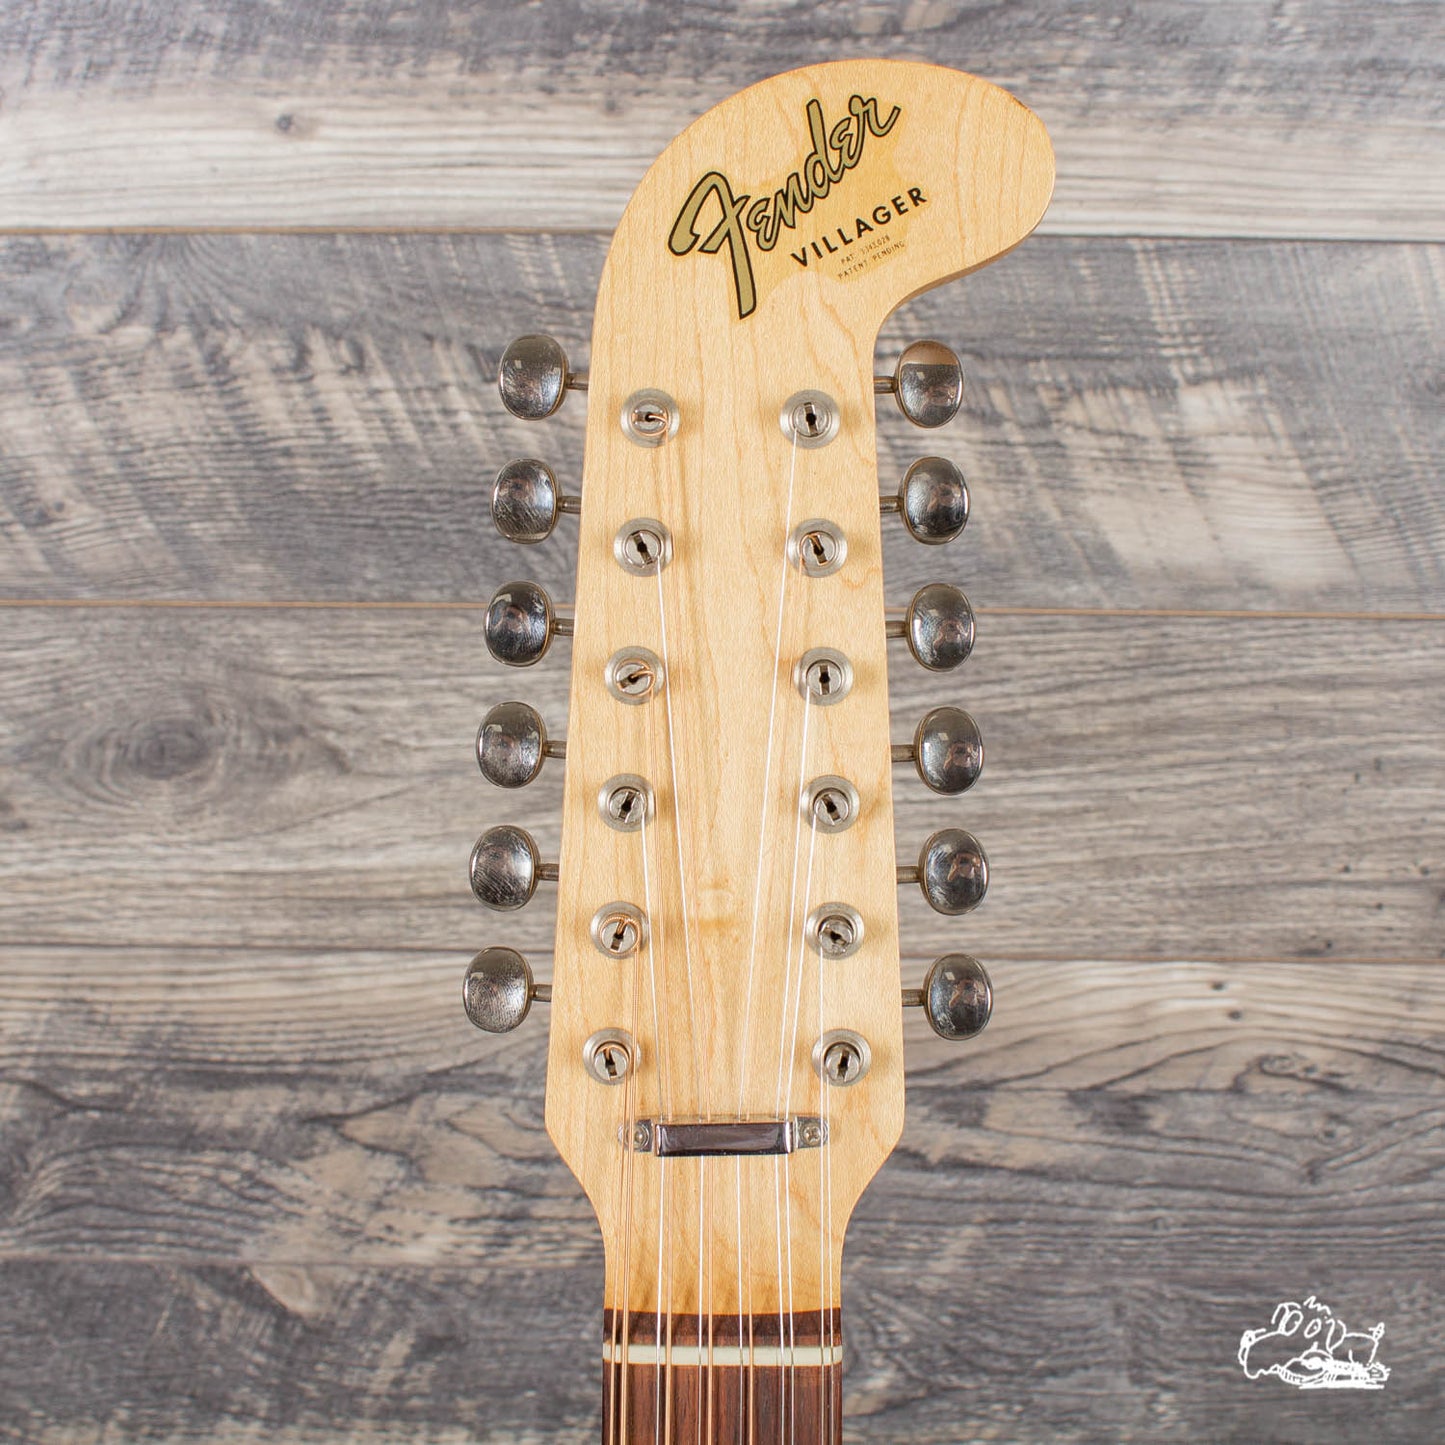 1960s Fender Villager 12 String Acoustic